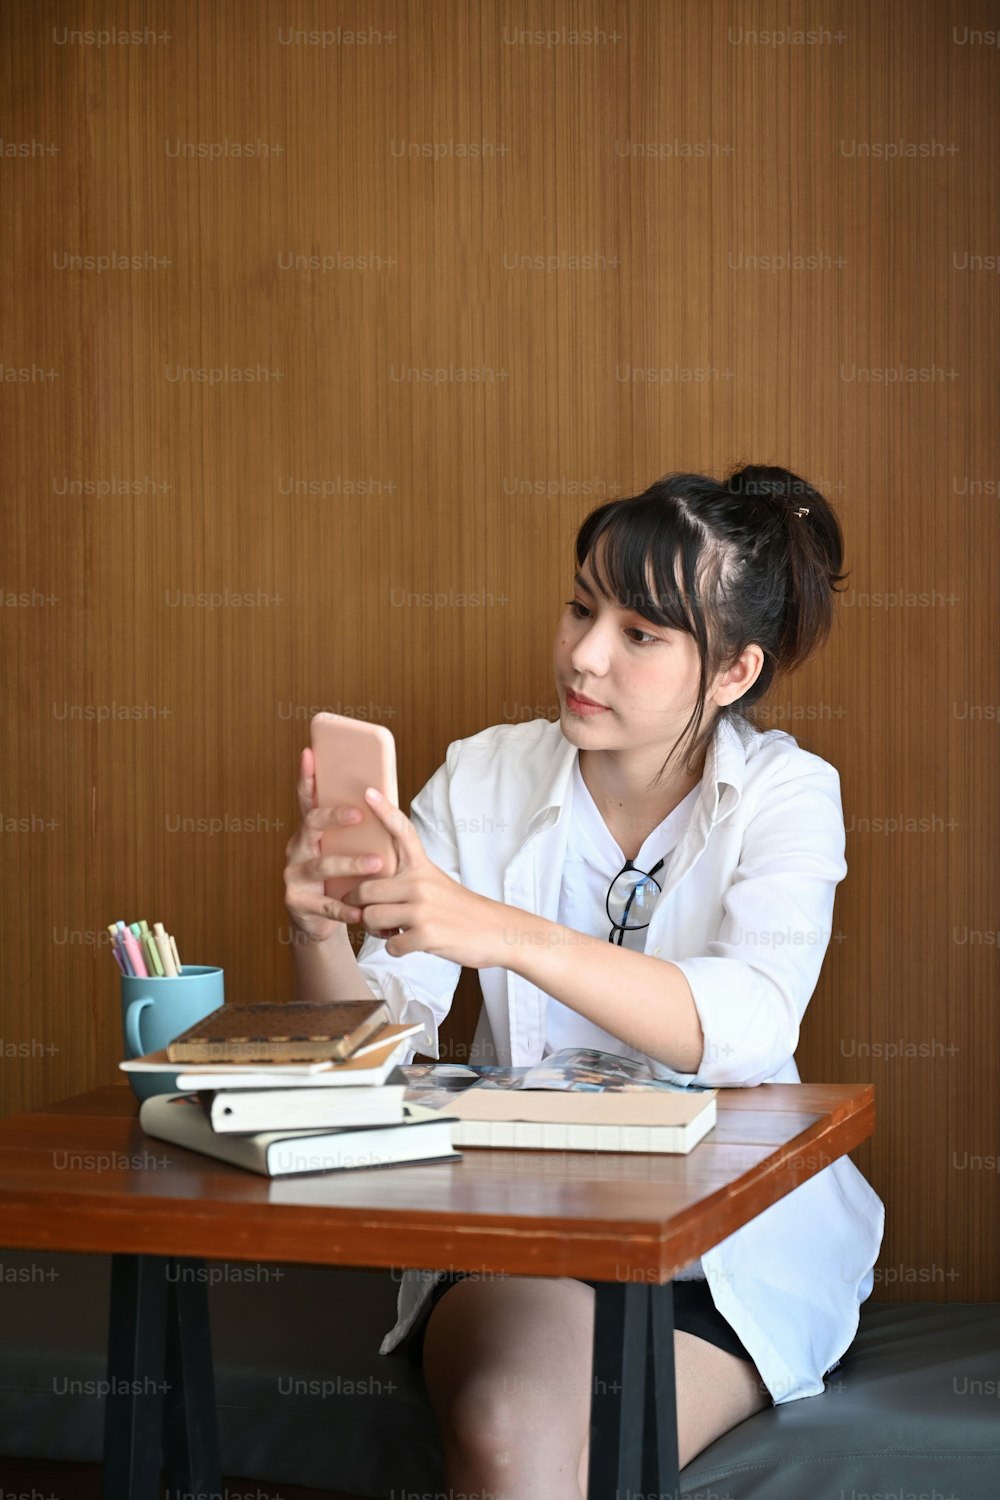 Retrato de una mujer joven con ropa informal sentada en un café y usando un teléfono móvil.